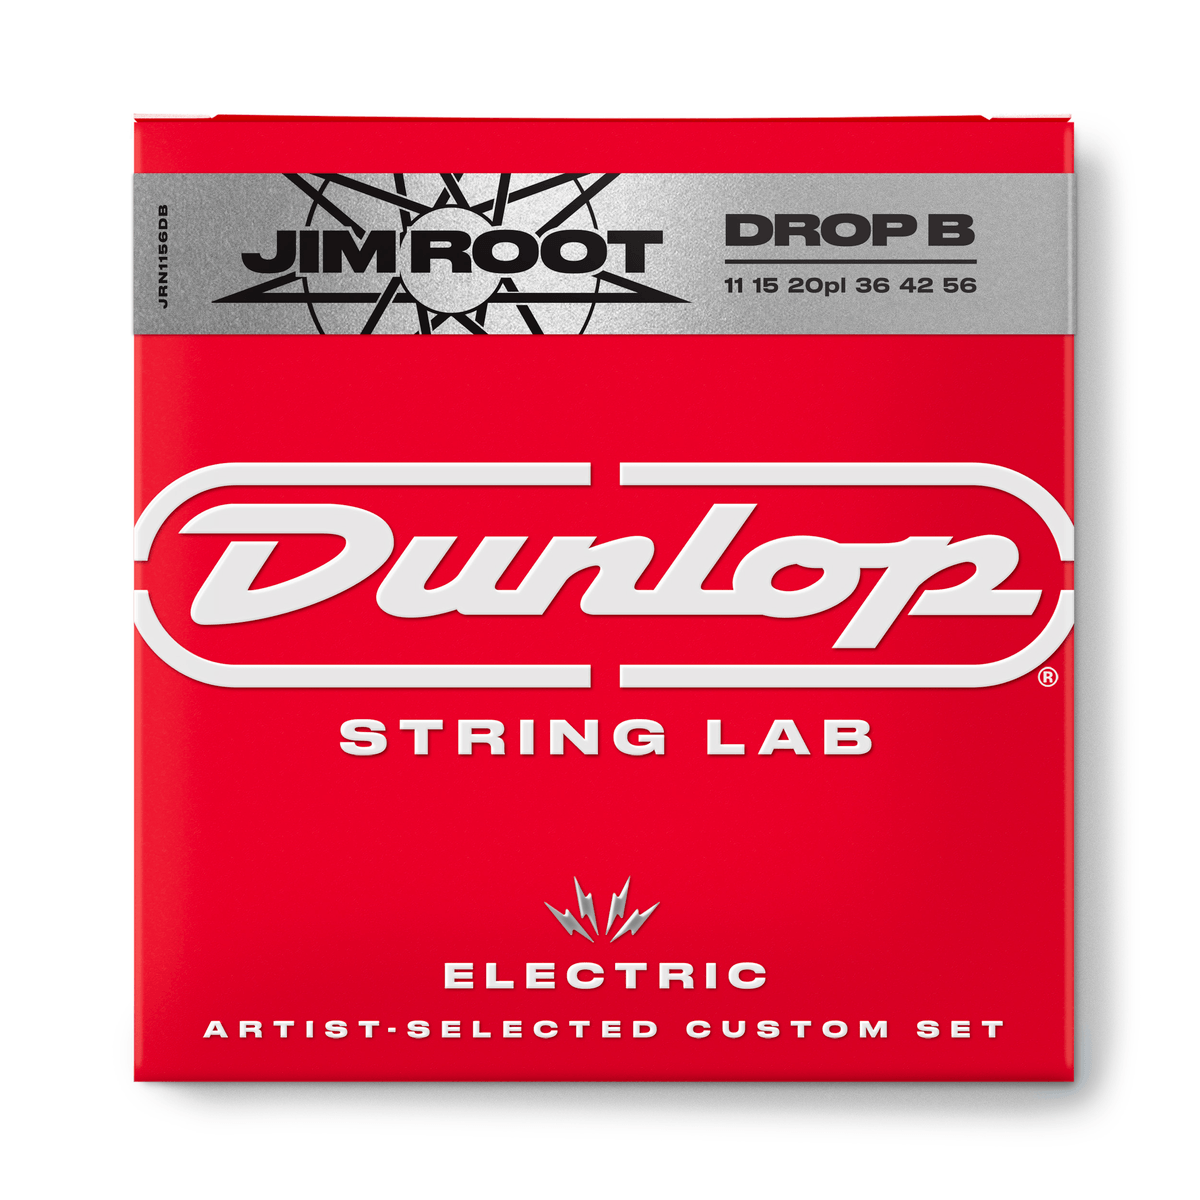 Jim Root String Lab Guitar Strings, 11-56 Drop B